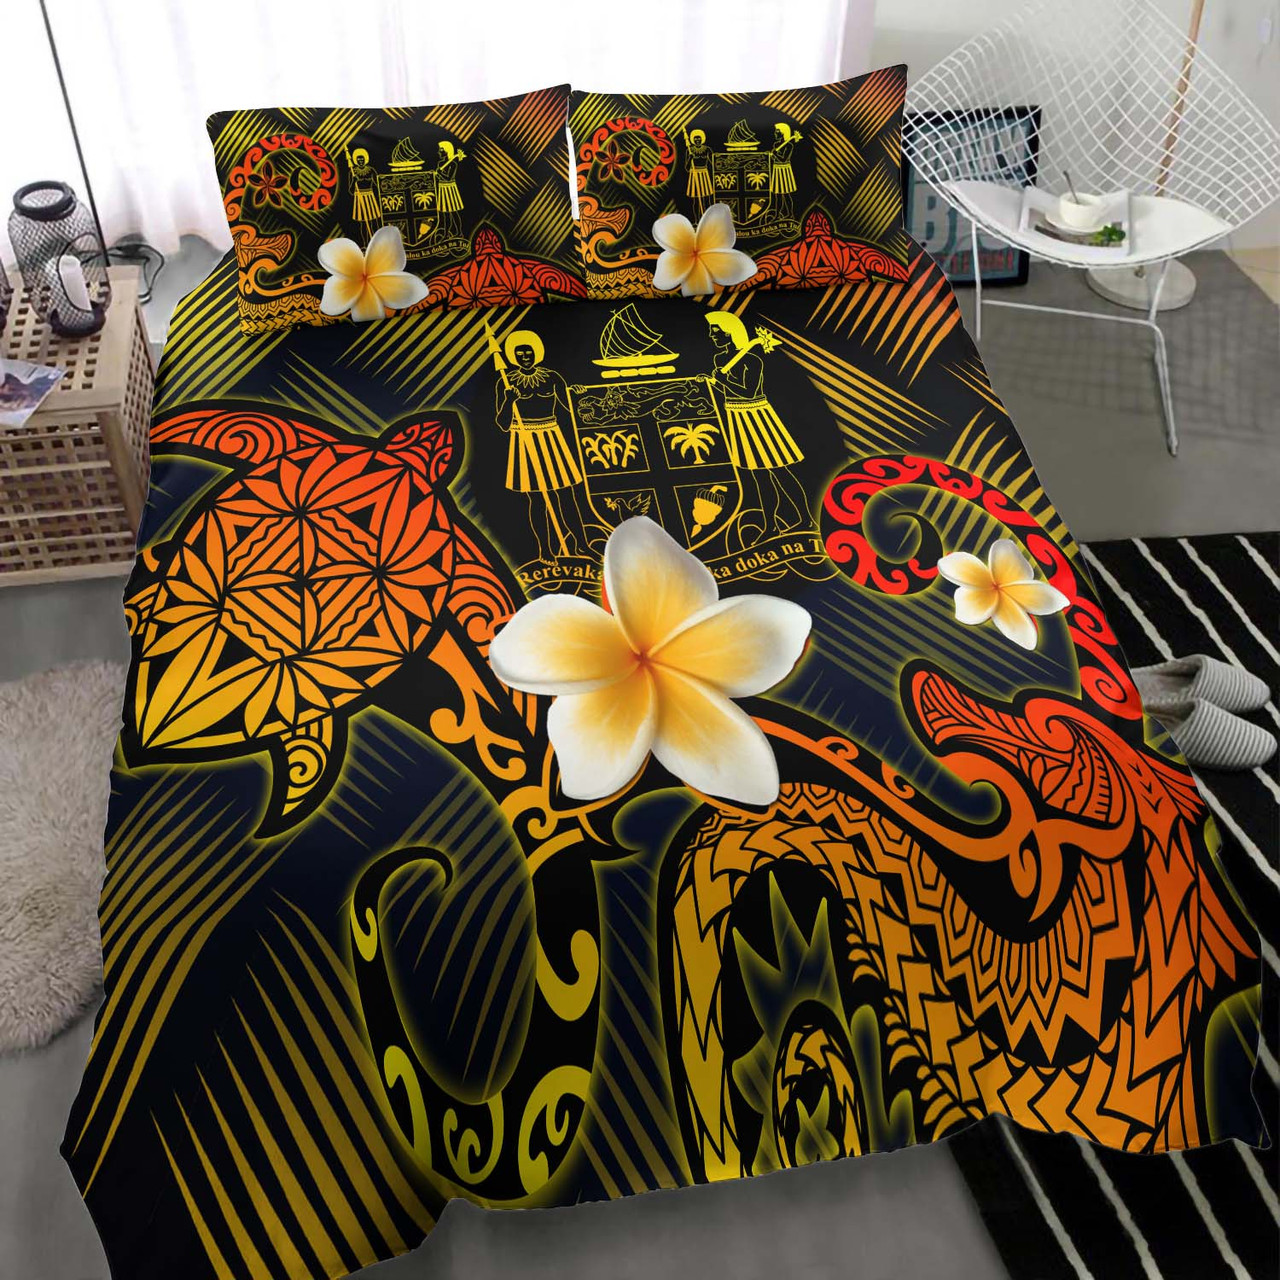 Fiji Polynesian Bedding Set - Lauhala Turtle Plumeria Tropical